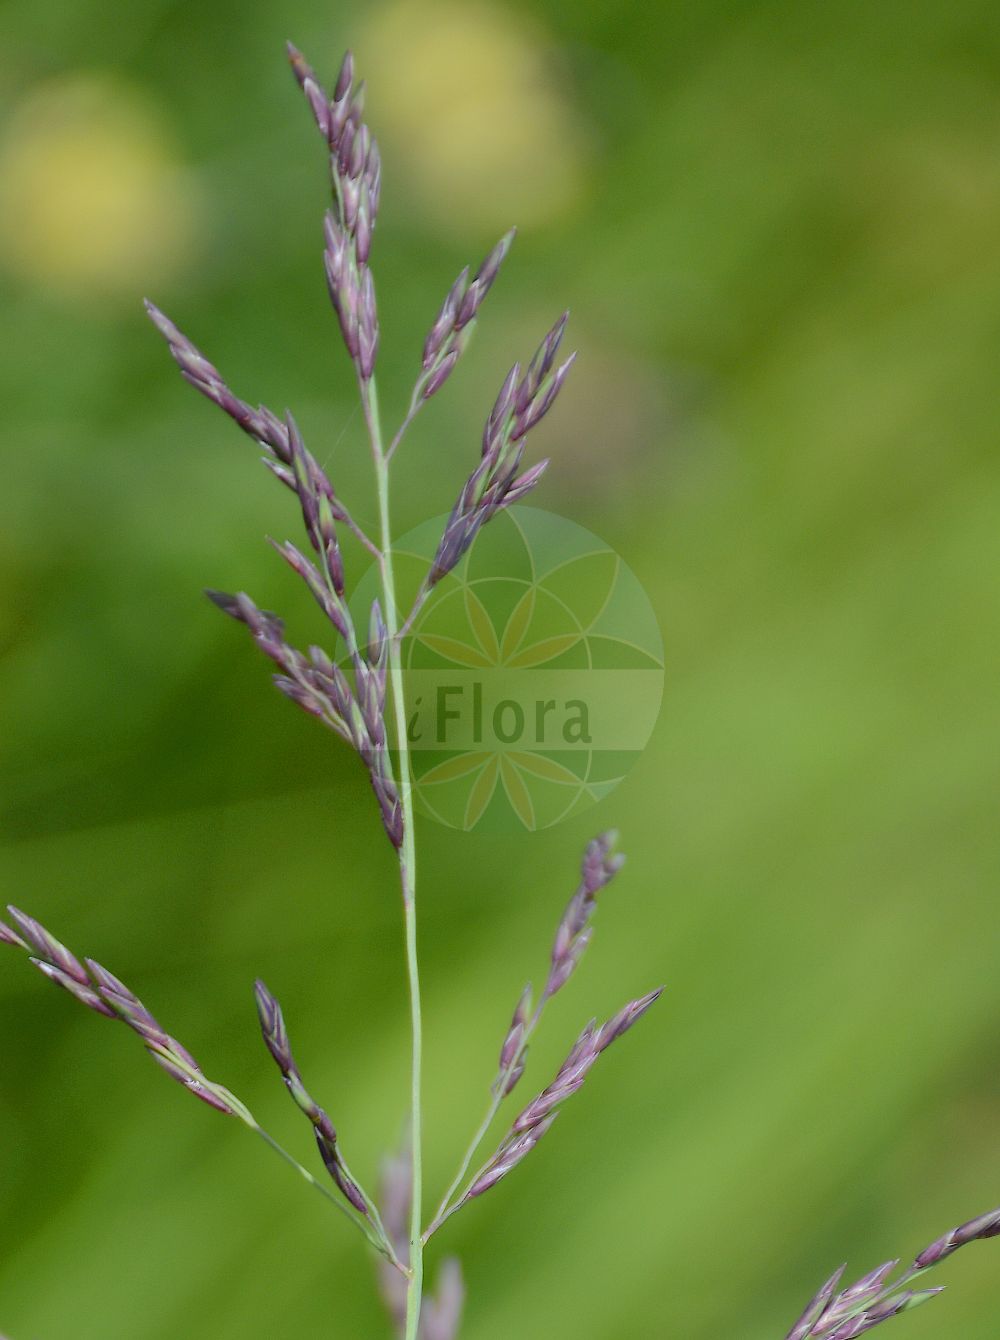 Foto von Molinia arundinacea (Rohr-Pfeifengras - Purple Moor-grass). Das Foto wurde in Flore Alpe, Champex-Lac, Wallis, Schweiz aufgenommen. ---- Photo of Molinia arundinacea (Rohr-Pfeifengras - Purple Moor-grass). The picture was taken in Flore Alpe, Champex-Lac, Valais, Switzerland.(Molinia arundinacea,Rohr-Pfeifengras,Purple Moor-grass,Molinia altissima,Molinia arundinacea,Molinia litoralis,Molinia poscii,Molinia ujhelyii,Rohr-Pfeifengras,Rohrartiges Pfeifengras,Purple Moor-grass,Molinia,Pfeifengras,Moorgrass,Poaceae,Süßgräser,Grass family)